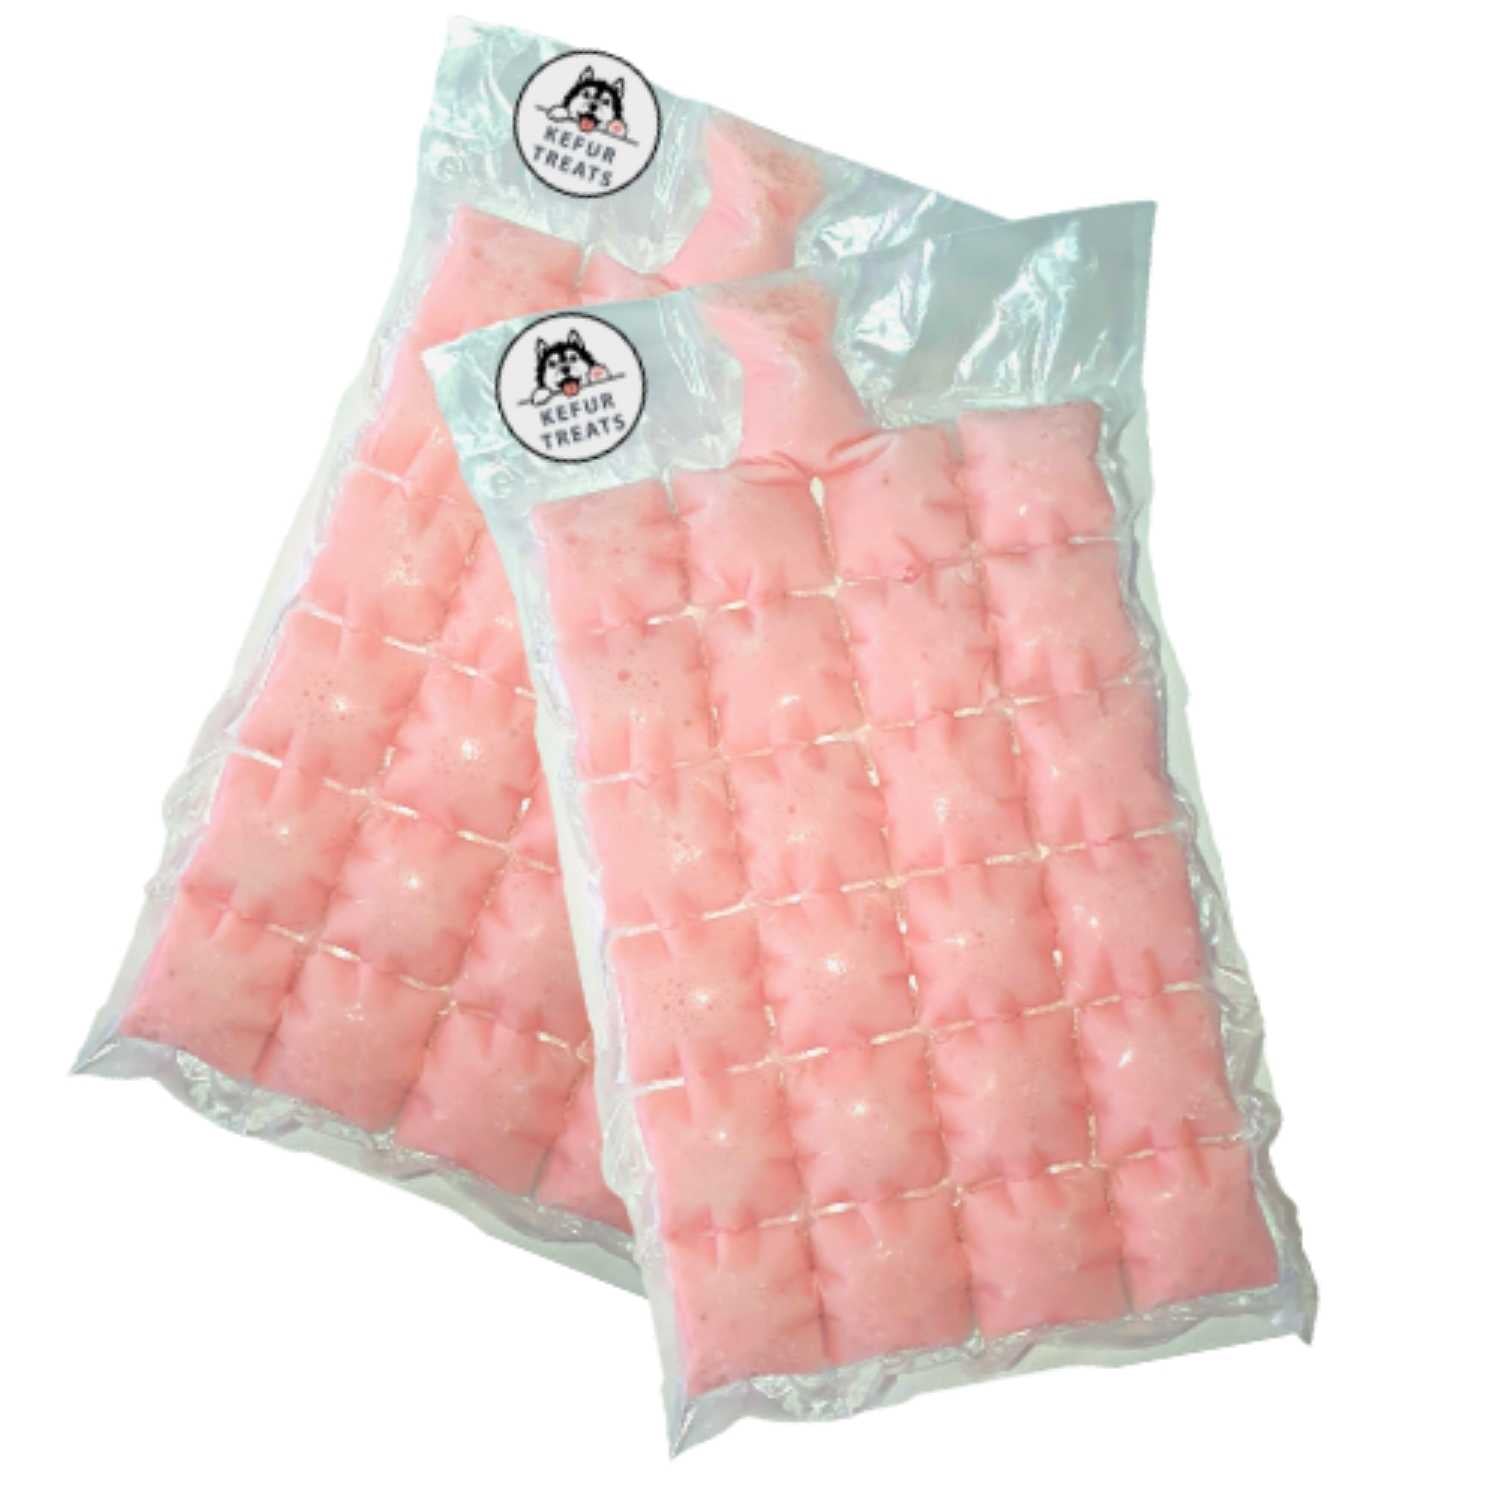 KEFUR TREATS - STRAWBERRY Cow Milk Kefir Frozen Pack (24 Cubes) - Pet Treats